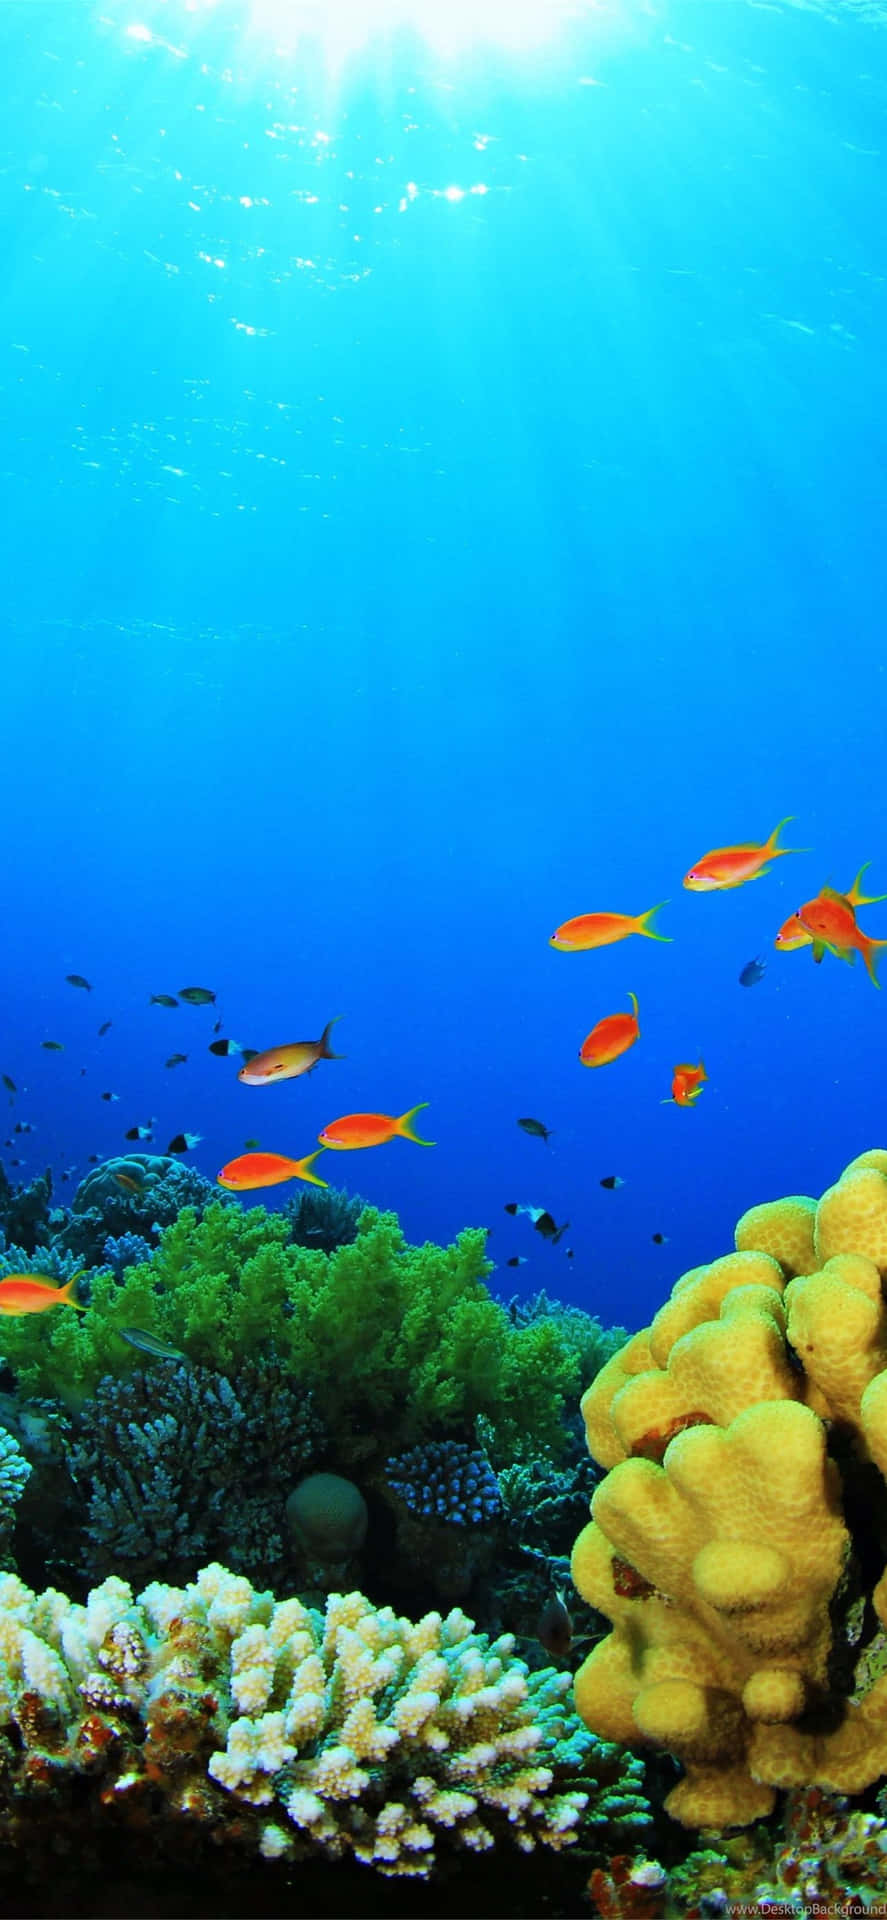 Unarrecife De Coral Con Peces